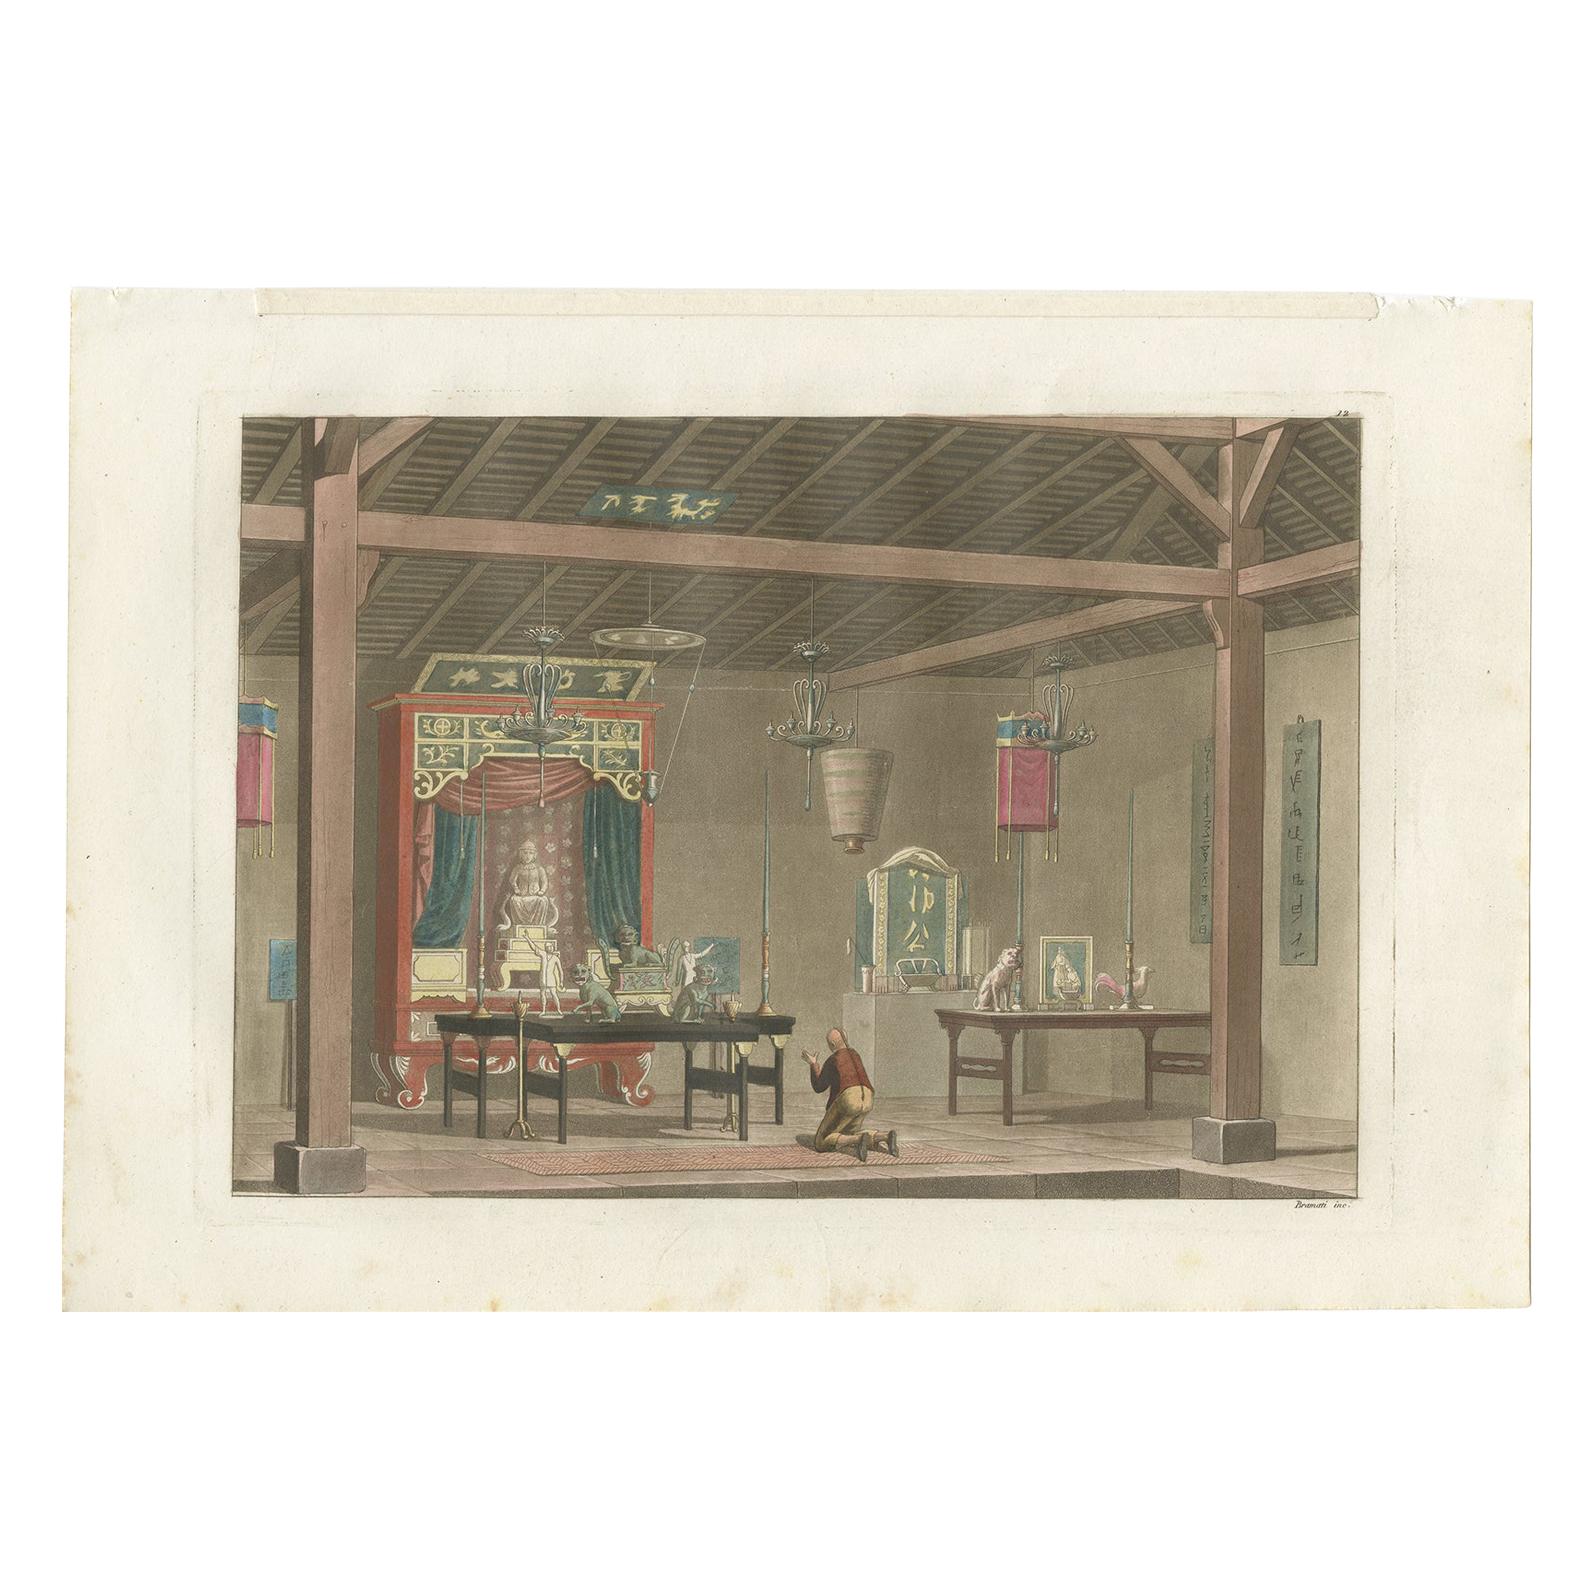 Antiker Druck eines chinesischen Tempels in Kupang von Ferrario, '1831'